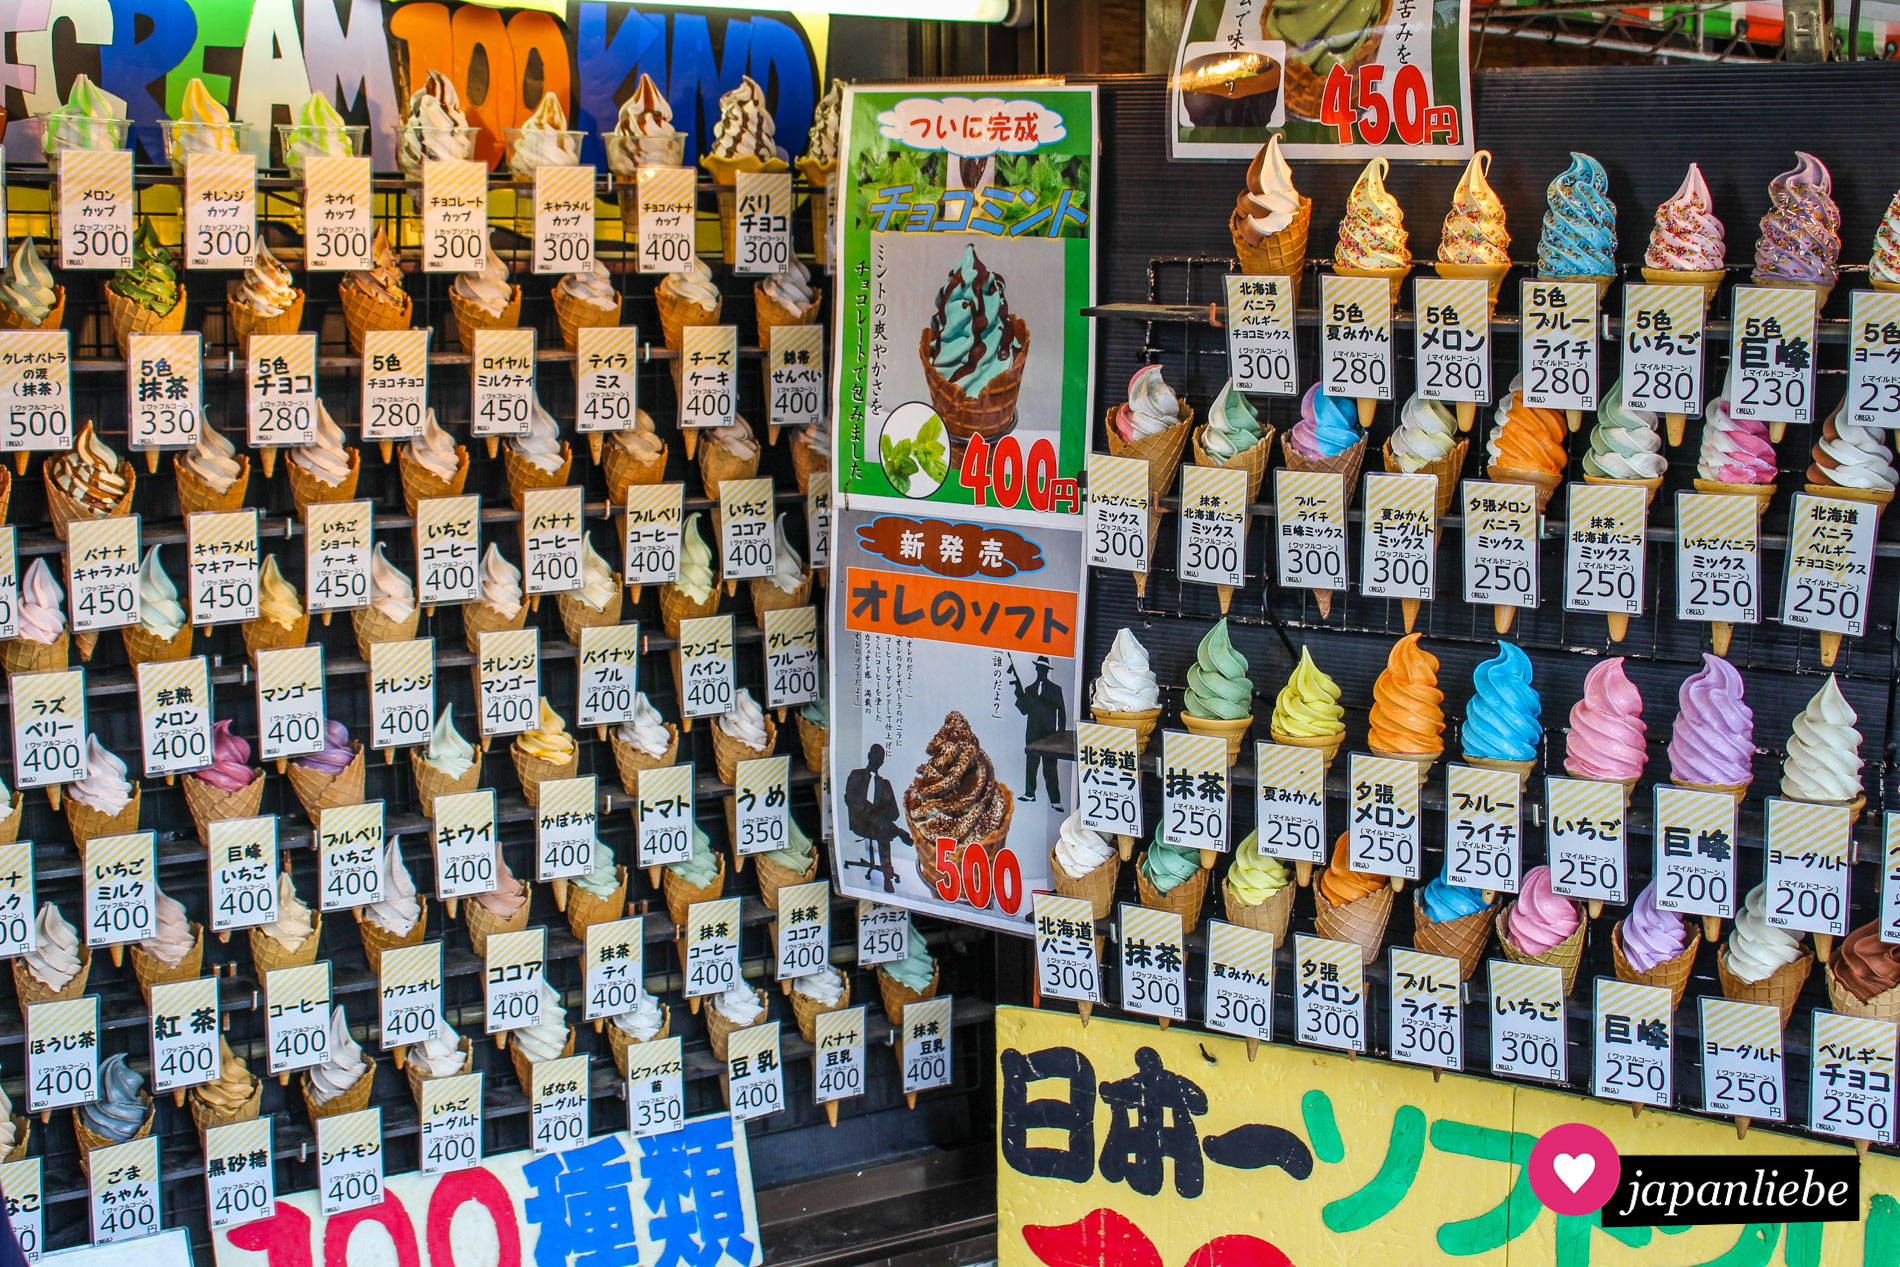 Iwakuni hat sich einen Namen gemacht mit einer gigantischen Auswahl an Softeis-Sorten.